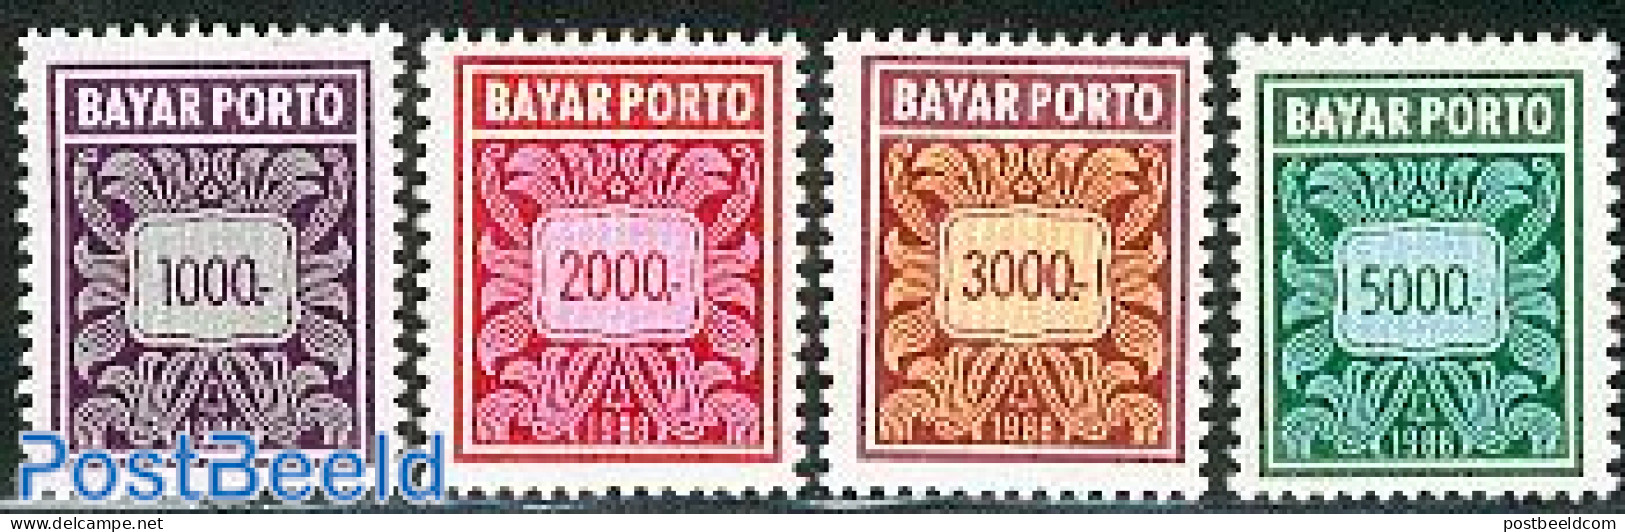 Indonesia 1988 Postage Due 4v, Mint NH - Indonesië